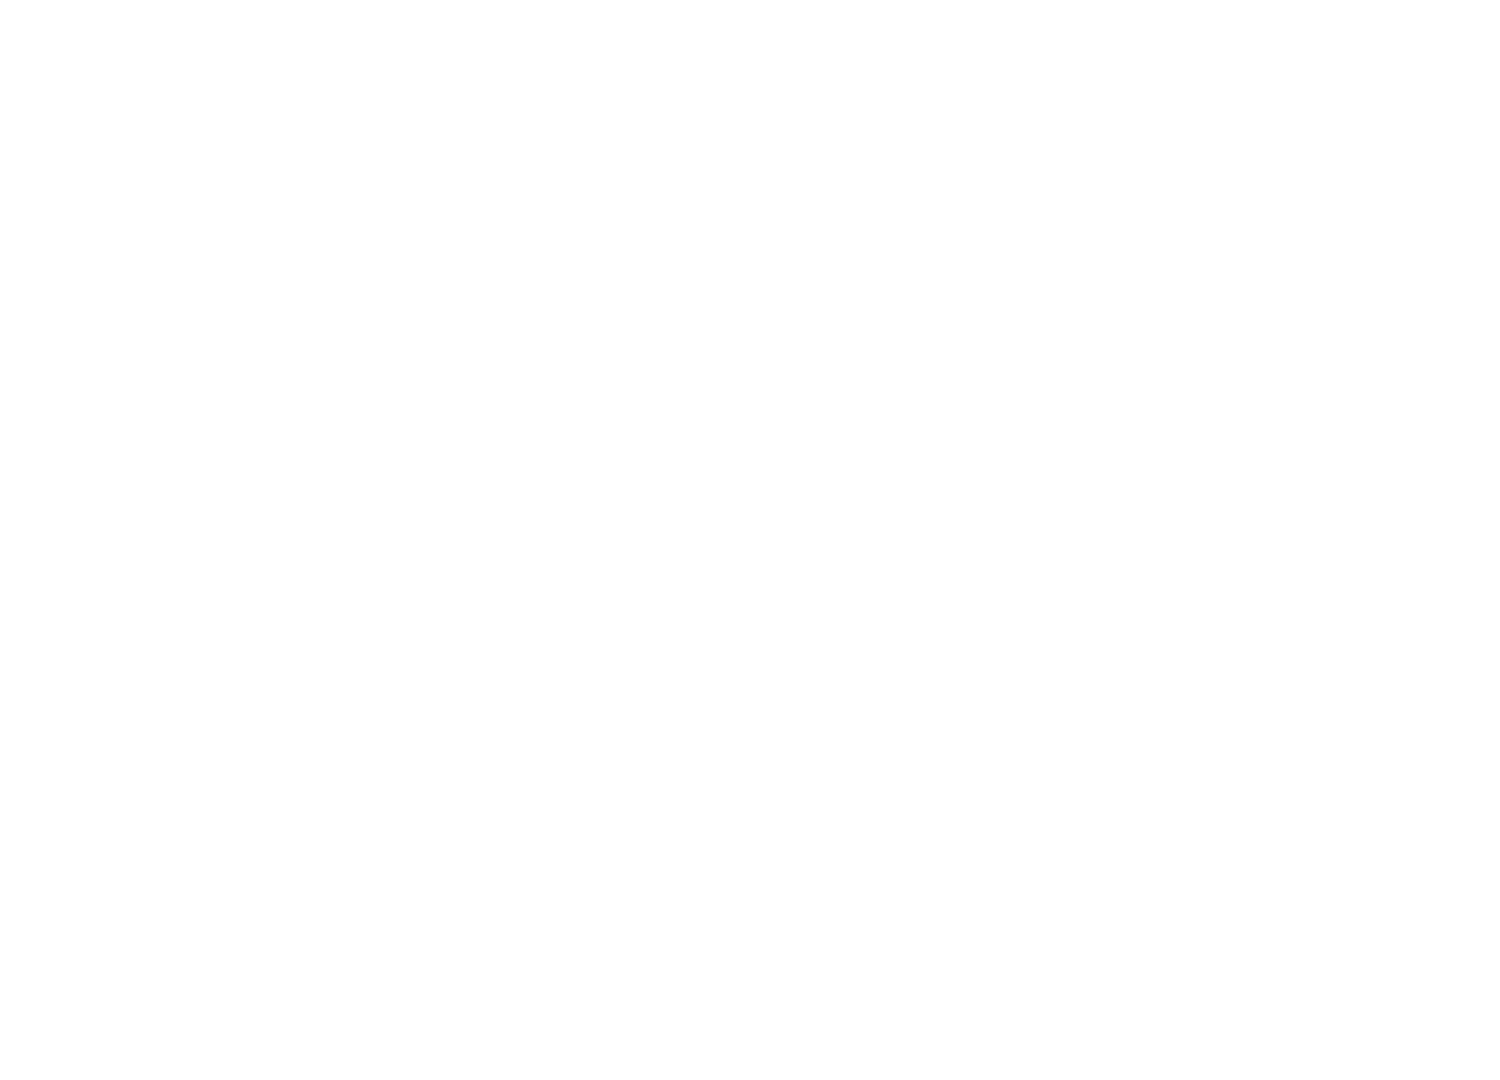 Yardbird Media